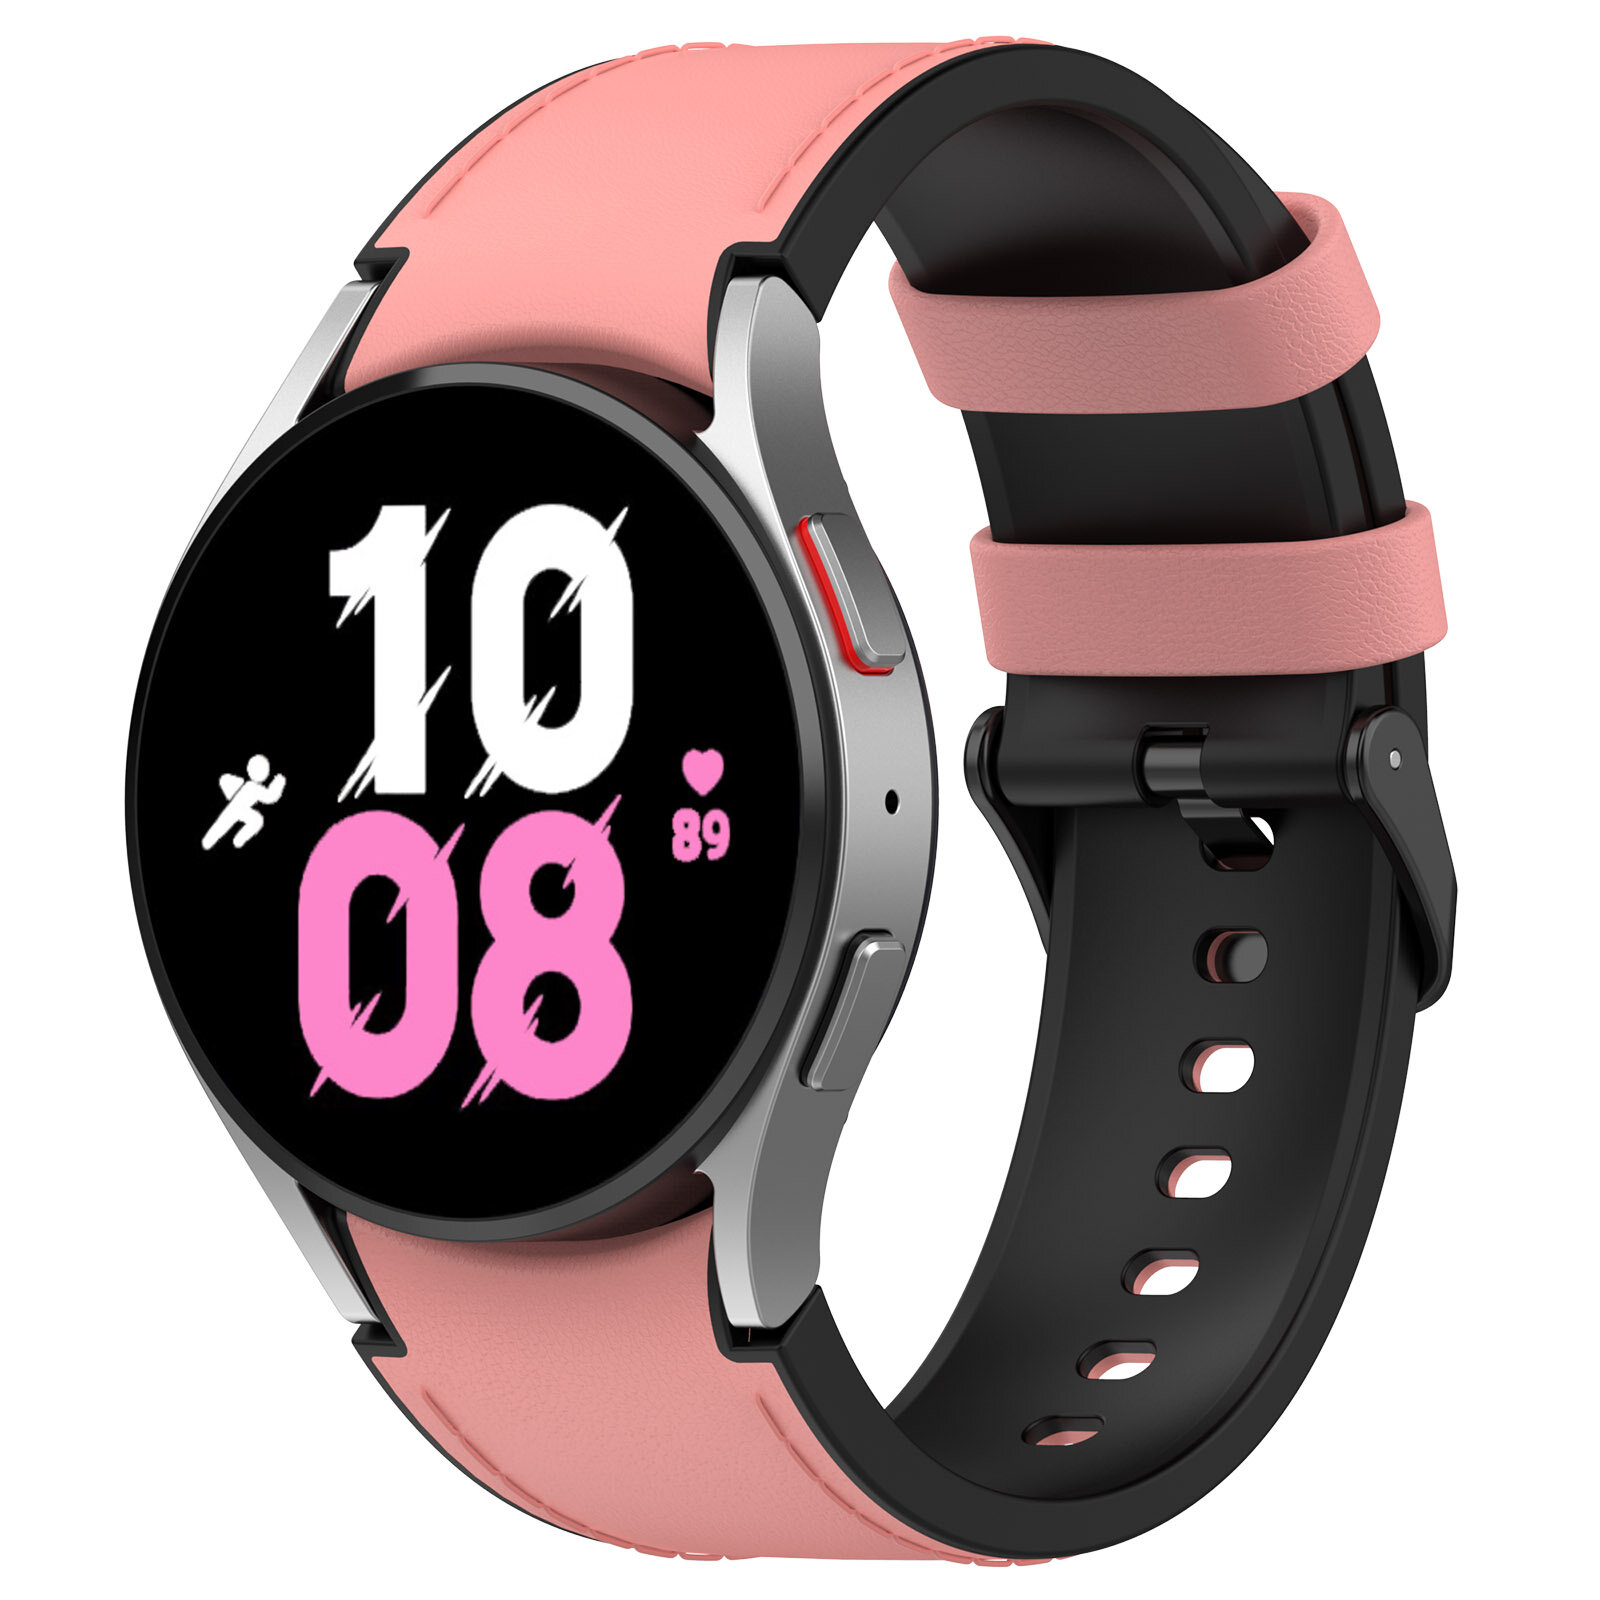 Двухцветный кожаный ремешок для Samsung Galaxy Watch, размер S, черно-розовый, черная пряжка